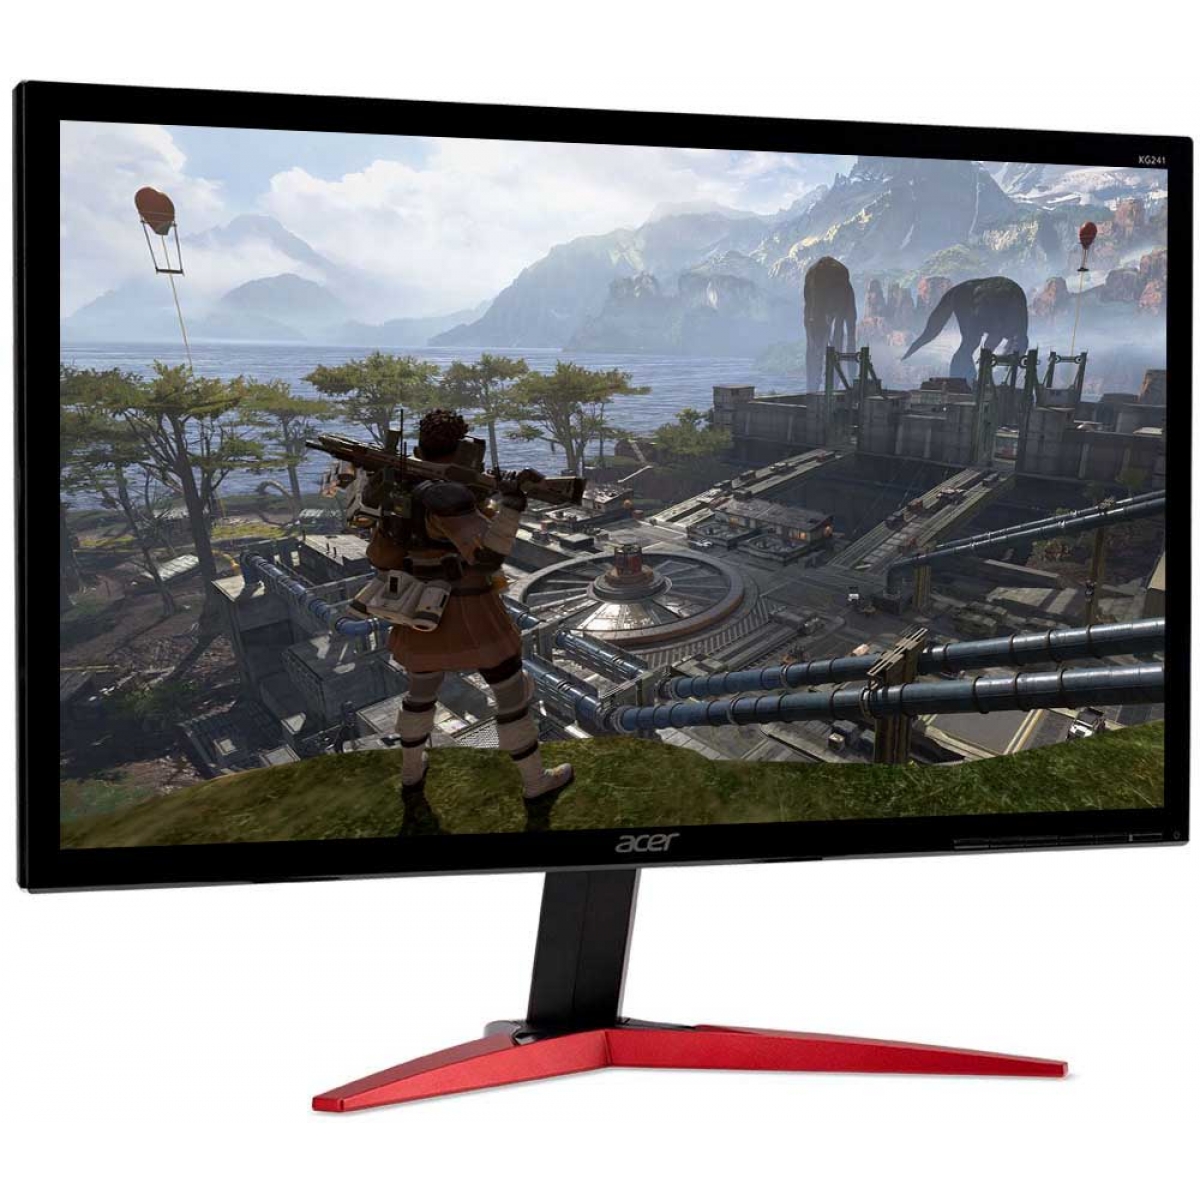 revolution deform nedbrydes Monitor Gamer Acer 23.6 Pol, Full HD, 144Hz, 1ms, KG241Q